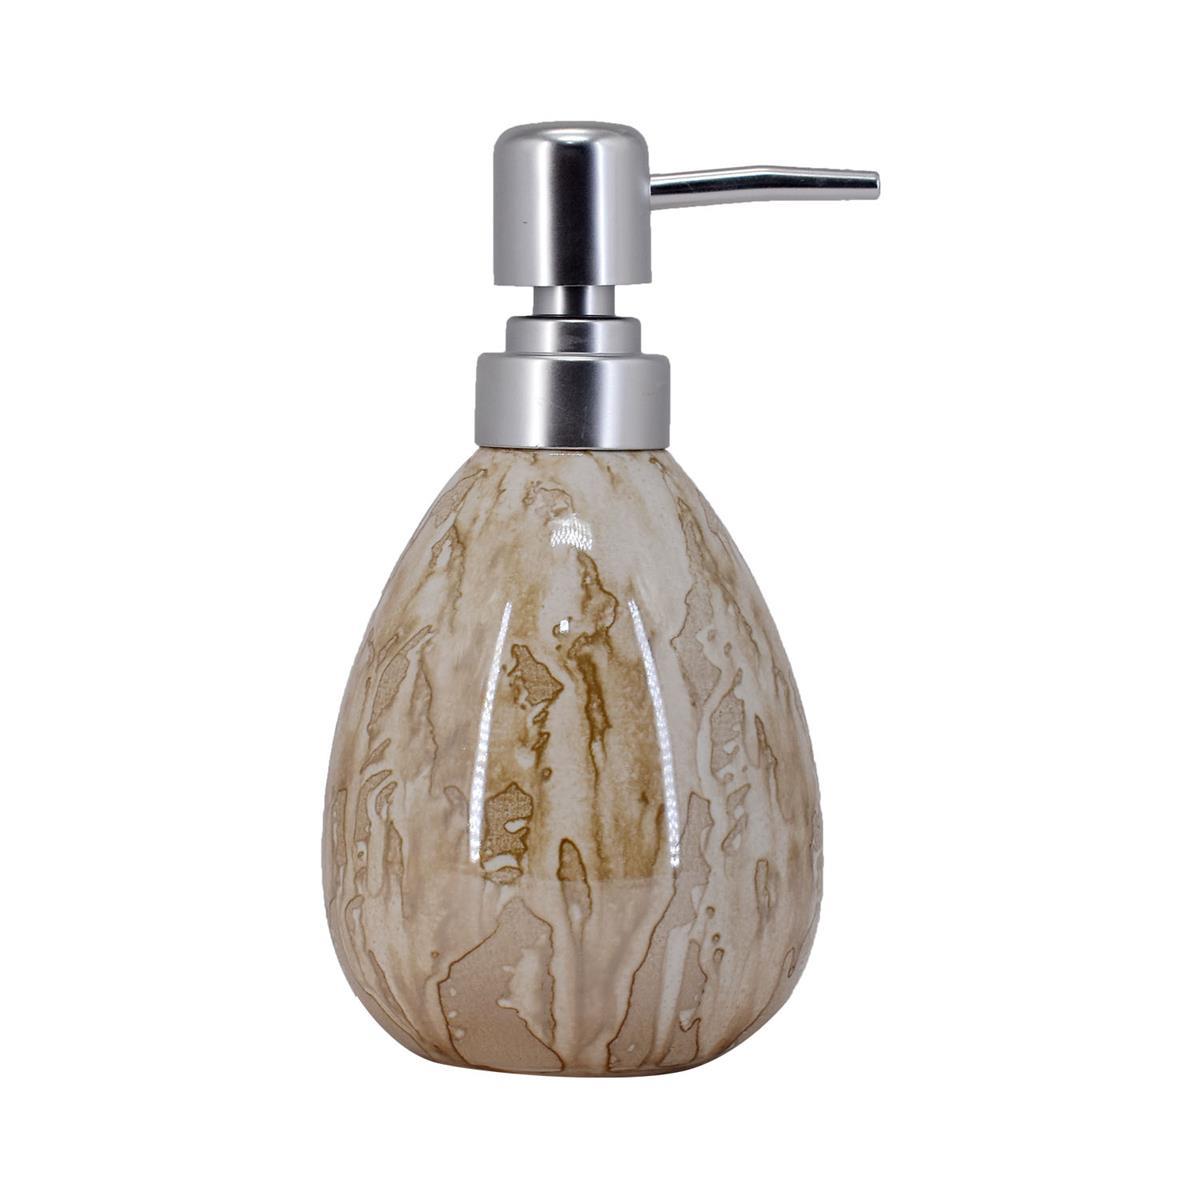 Ceramic Soap Dispenser handwash Pump for Bathroom, Set of 1, Cream (7615)